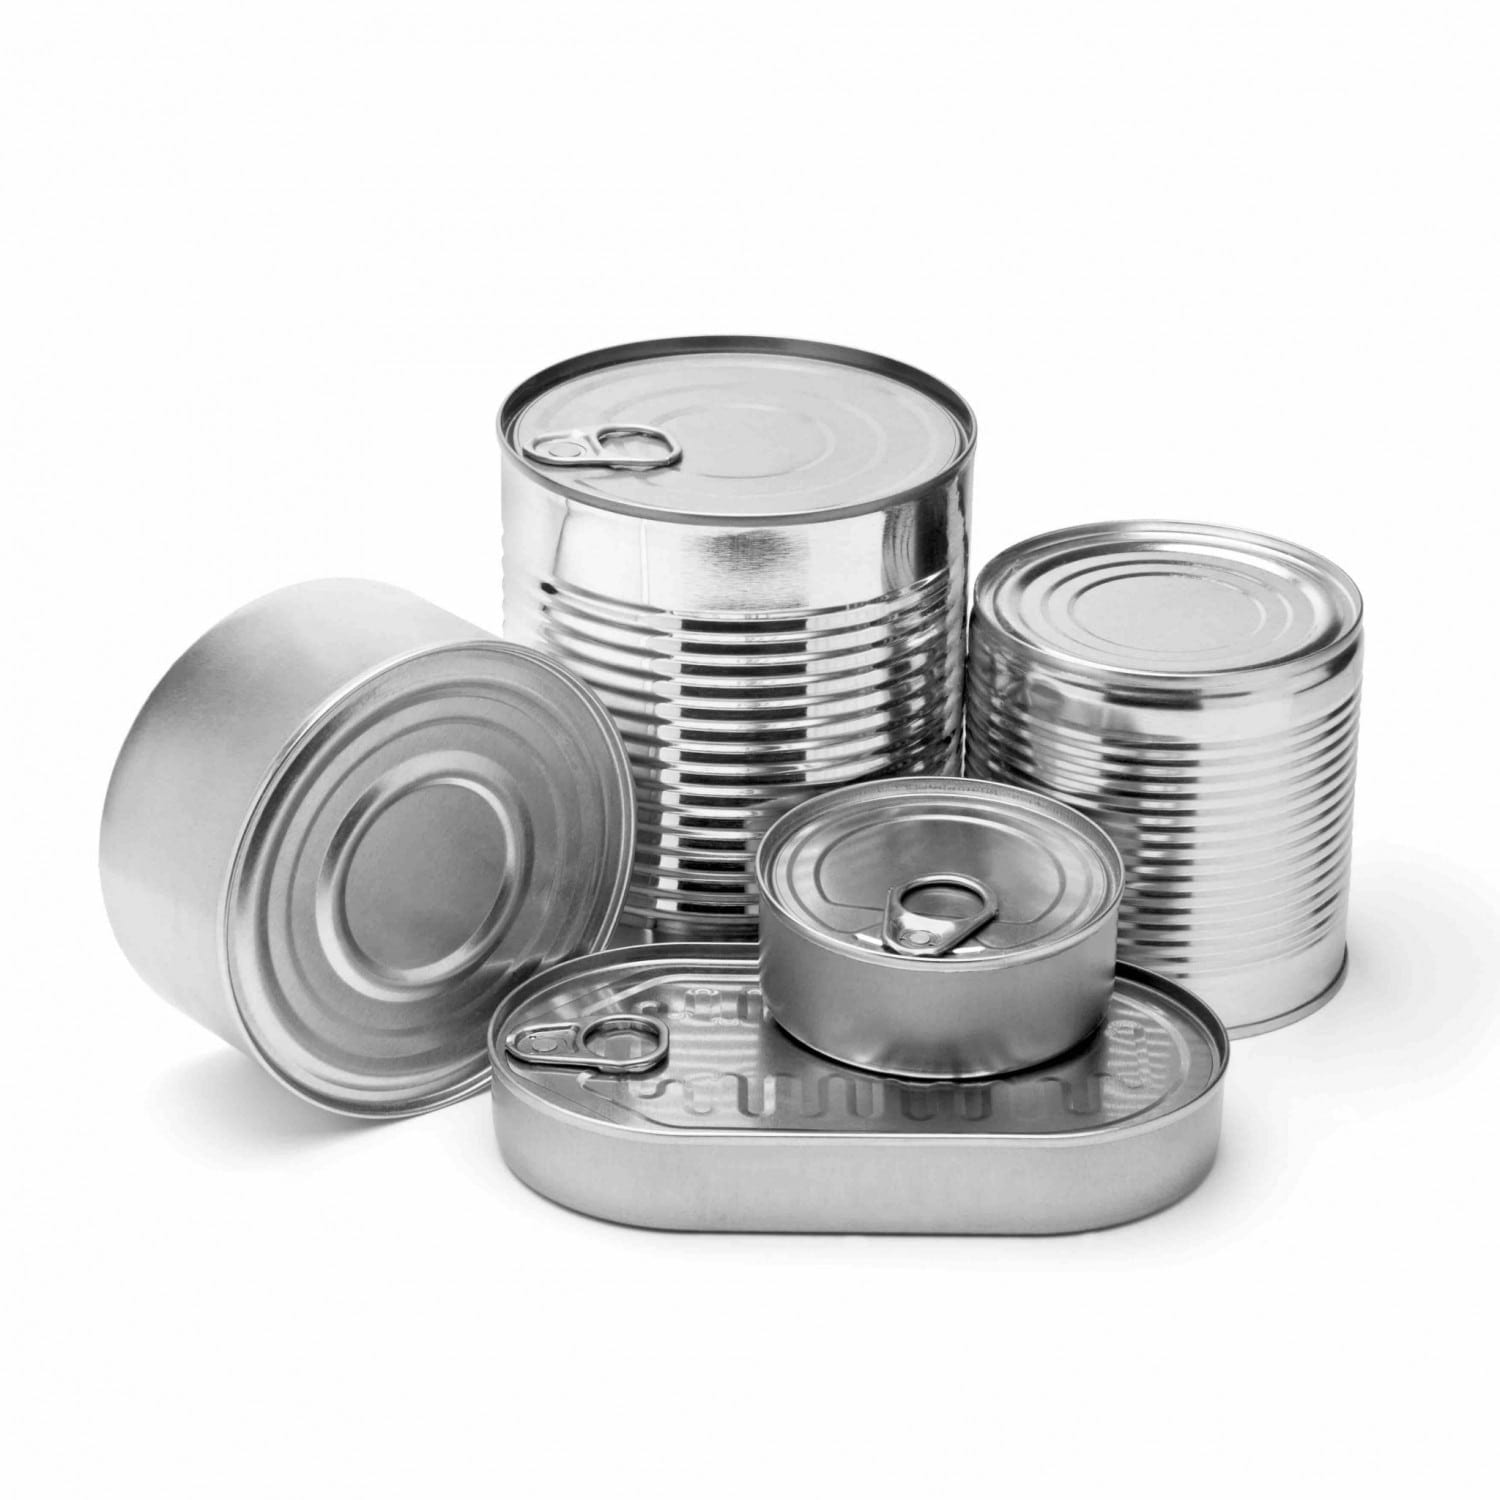 Metal Cans Tinned Food Bpa